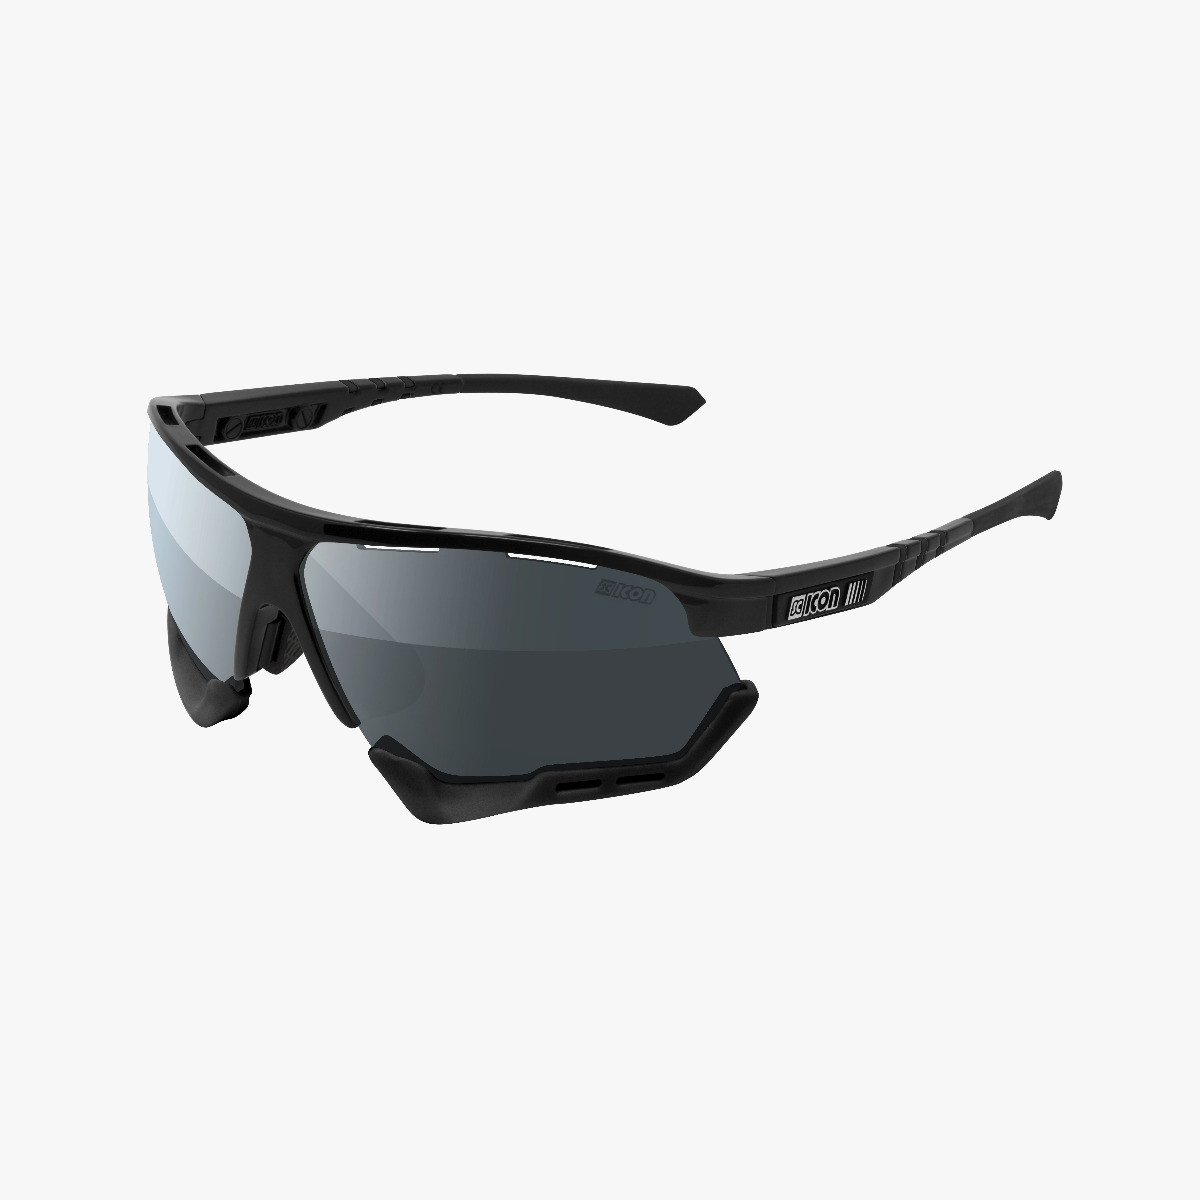 Aerocomfort performance sunglasses scnpp black frame silver lenses EY19080205
